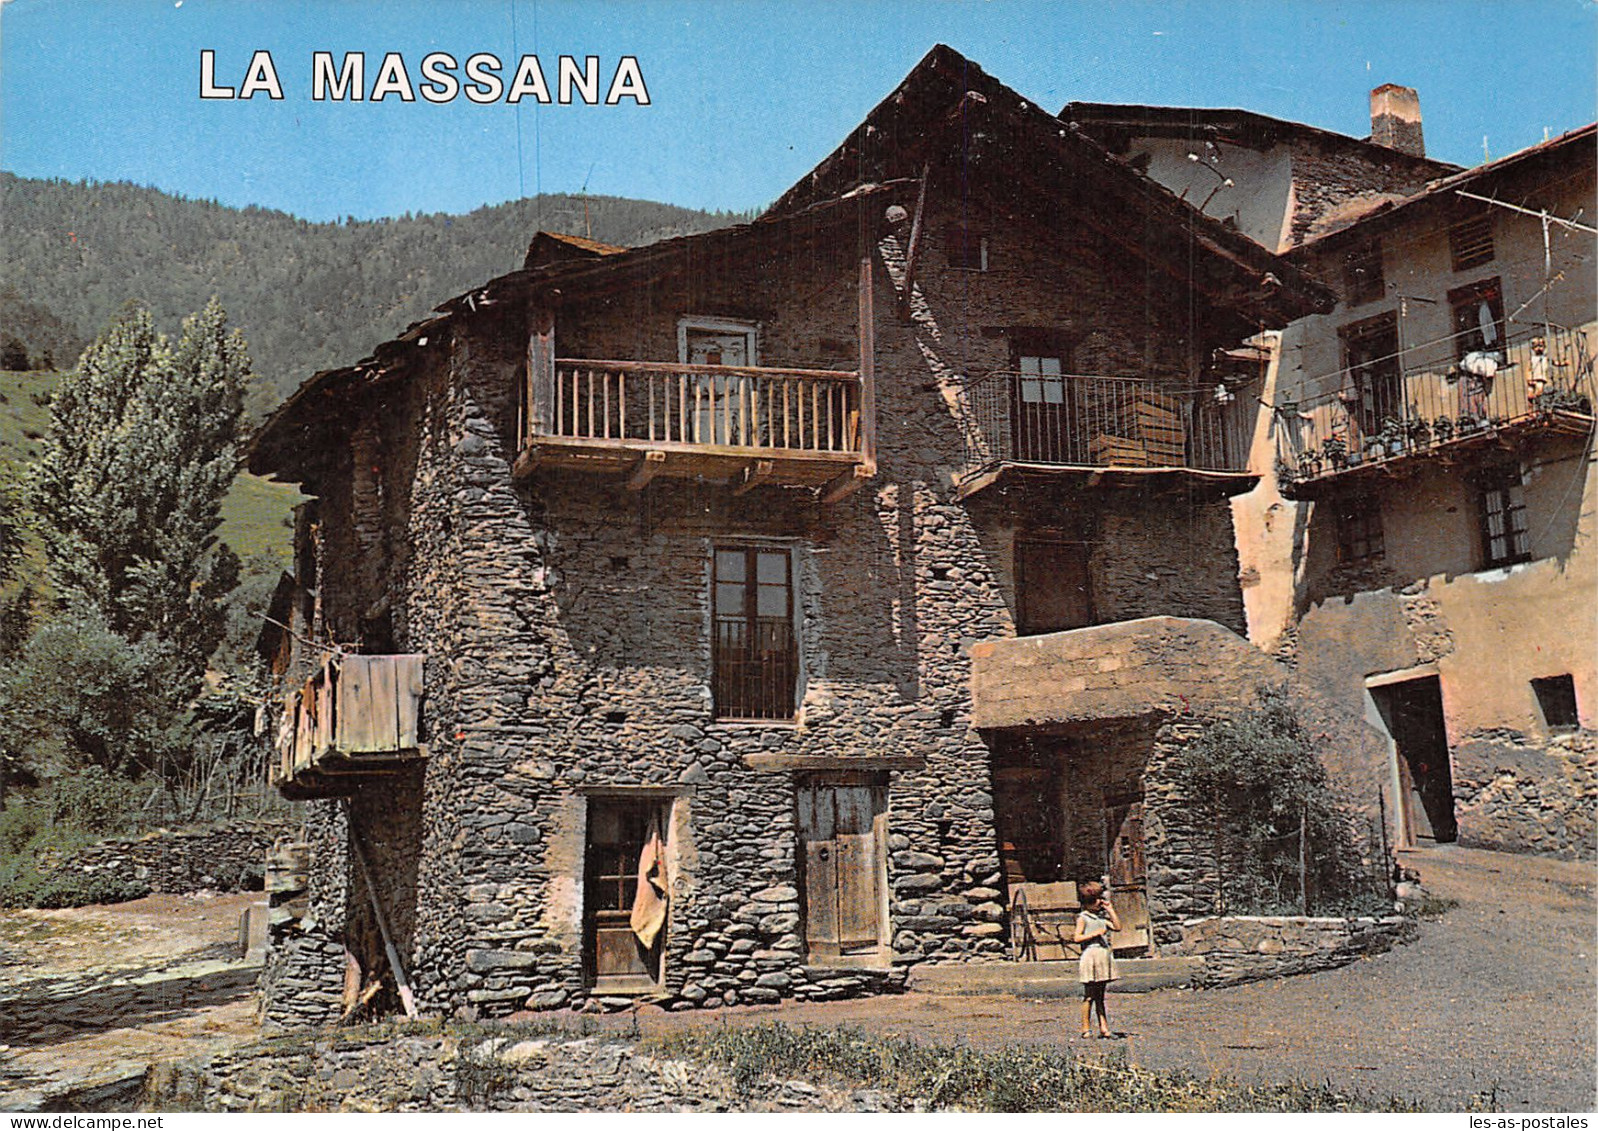 ANDORRA LA MASSANA - Andorra